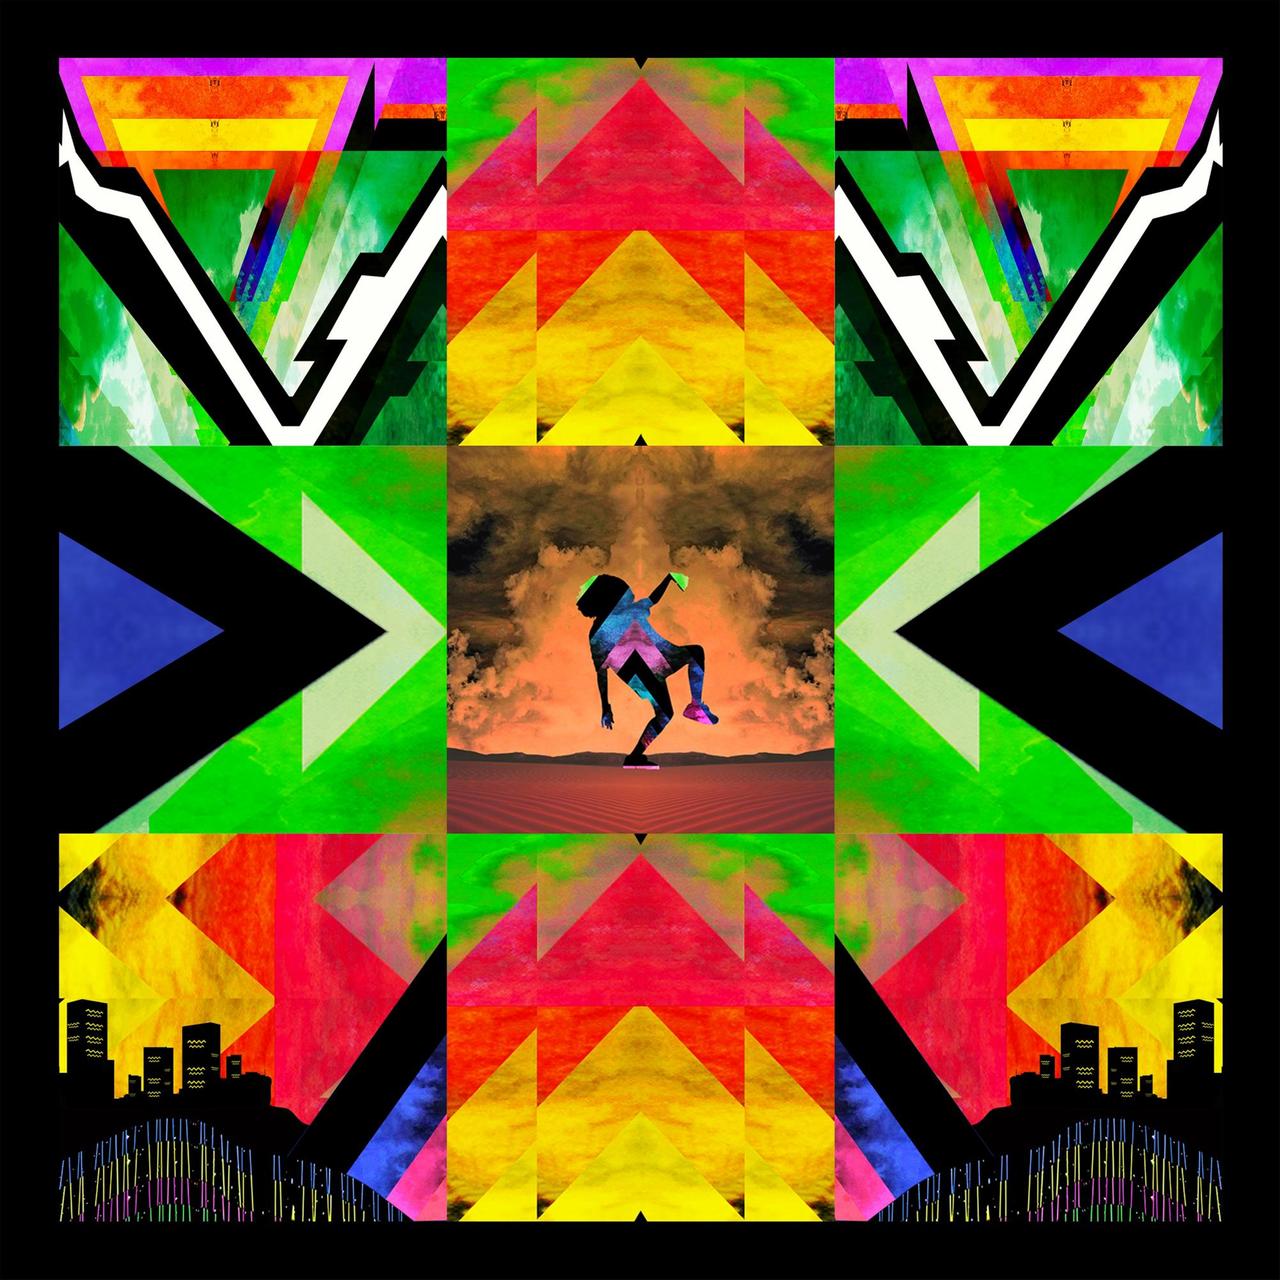 Das Cover des Albums "Egoli" von Africa Express zeigt bunte Quadrate, Zick-zack-Linien und ein tanzendes Wesen in der Mitte